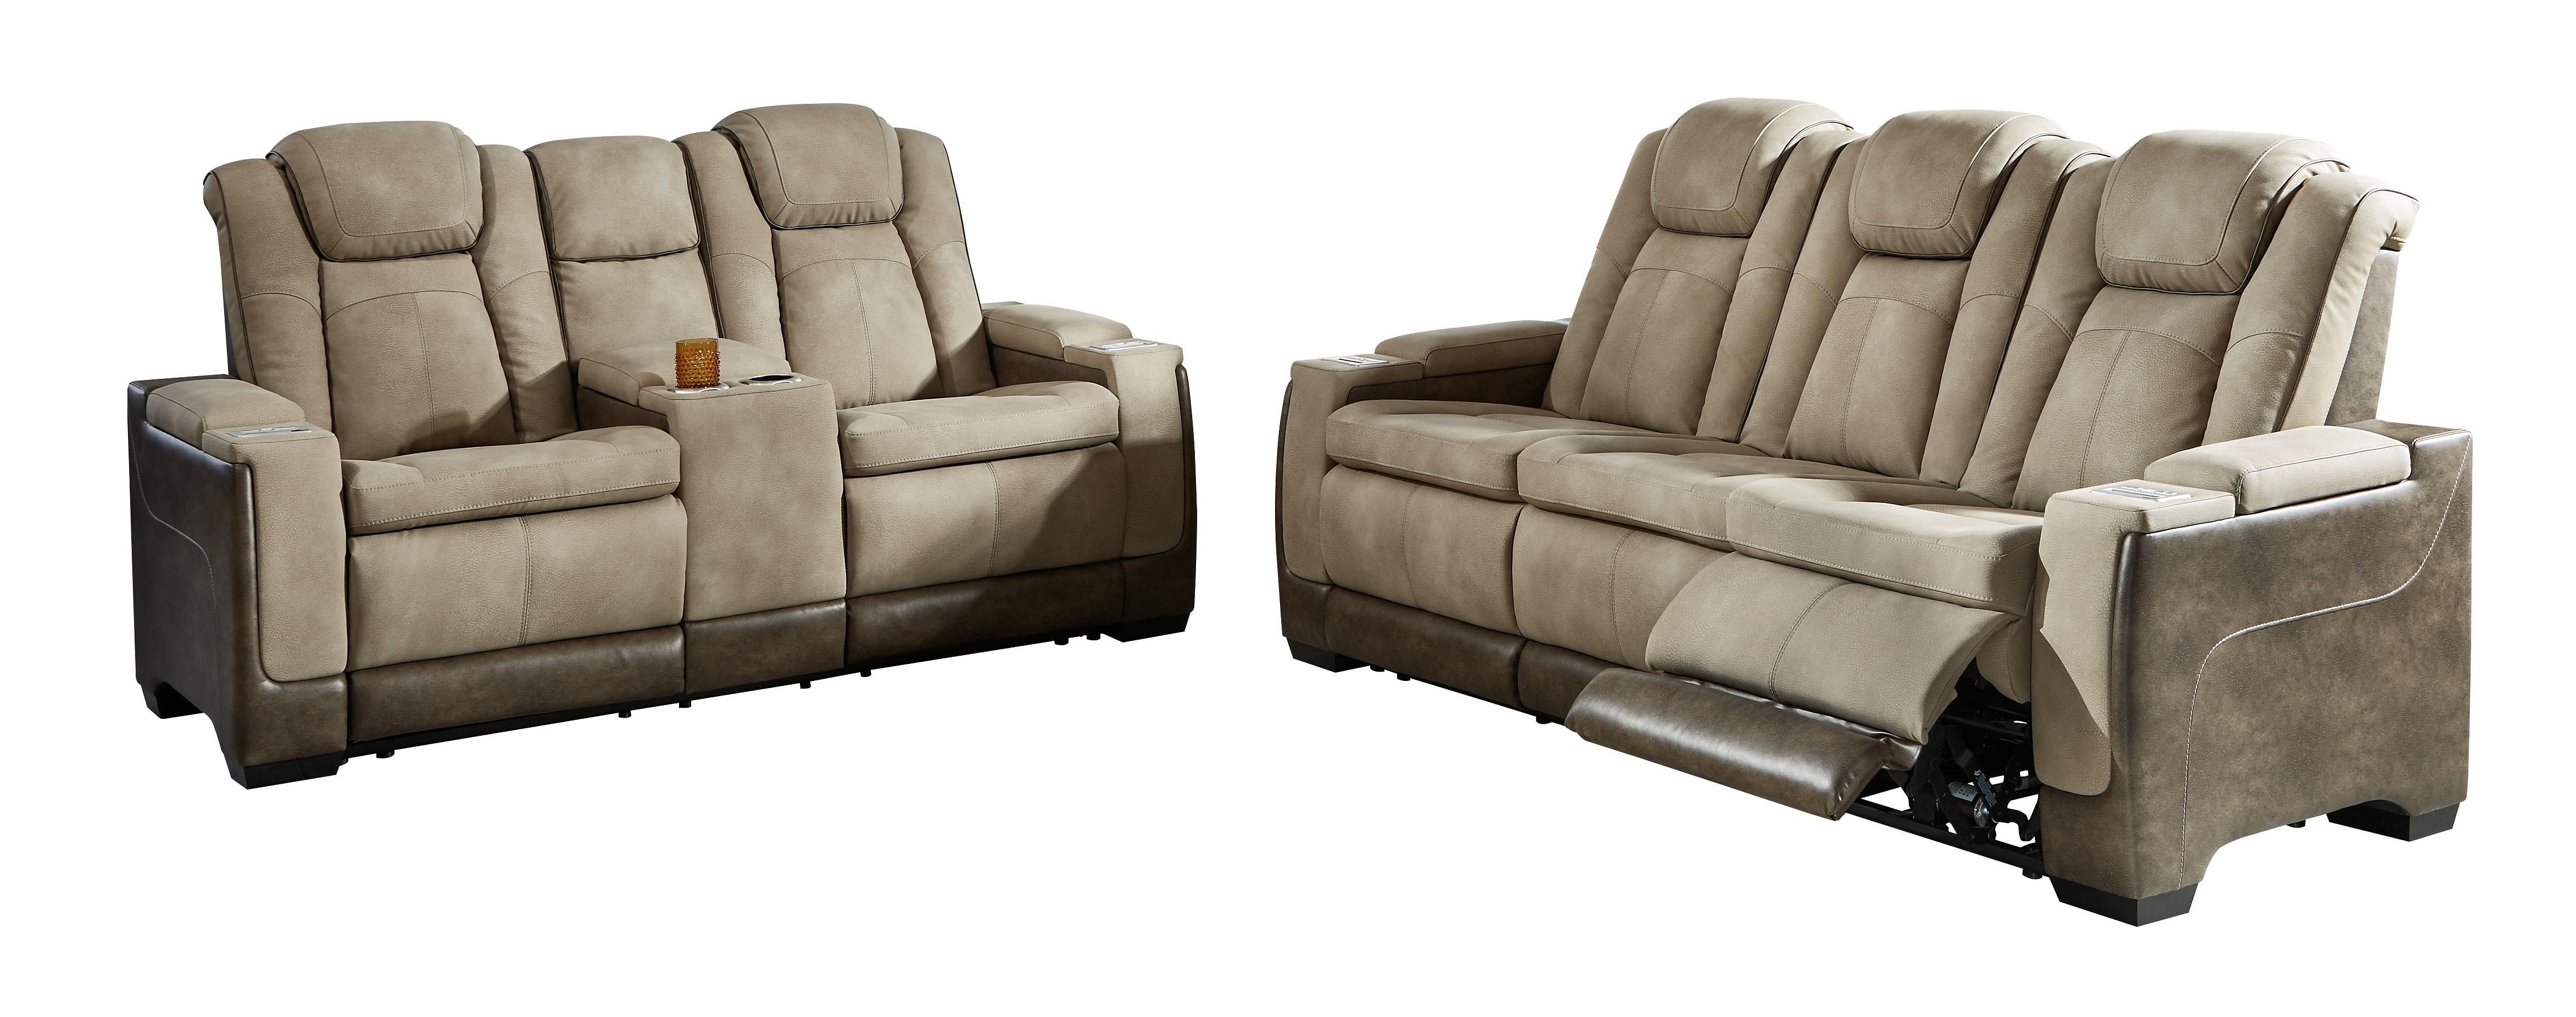 https://istylenew.gumlet.io/images/products/ashley-furniture-next-gen-durapella-sand-3-piece-2-seat-power-recliner-sofa-adjustable-headrest-p_2.jpg